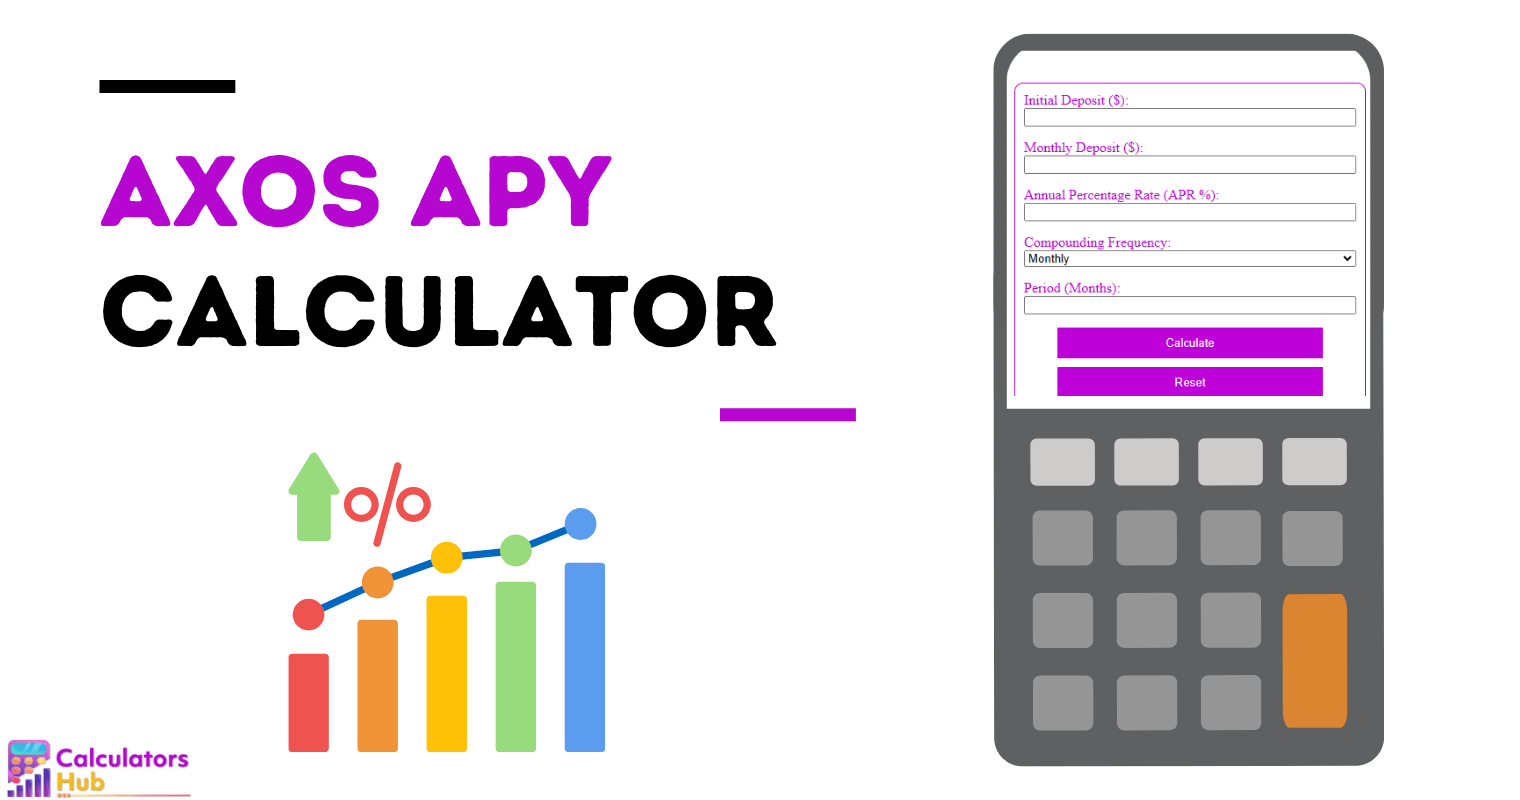 Axos APY Calculator